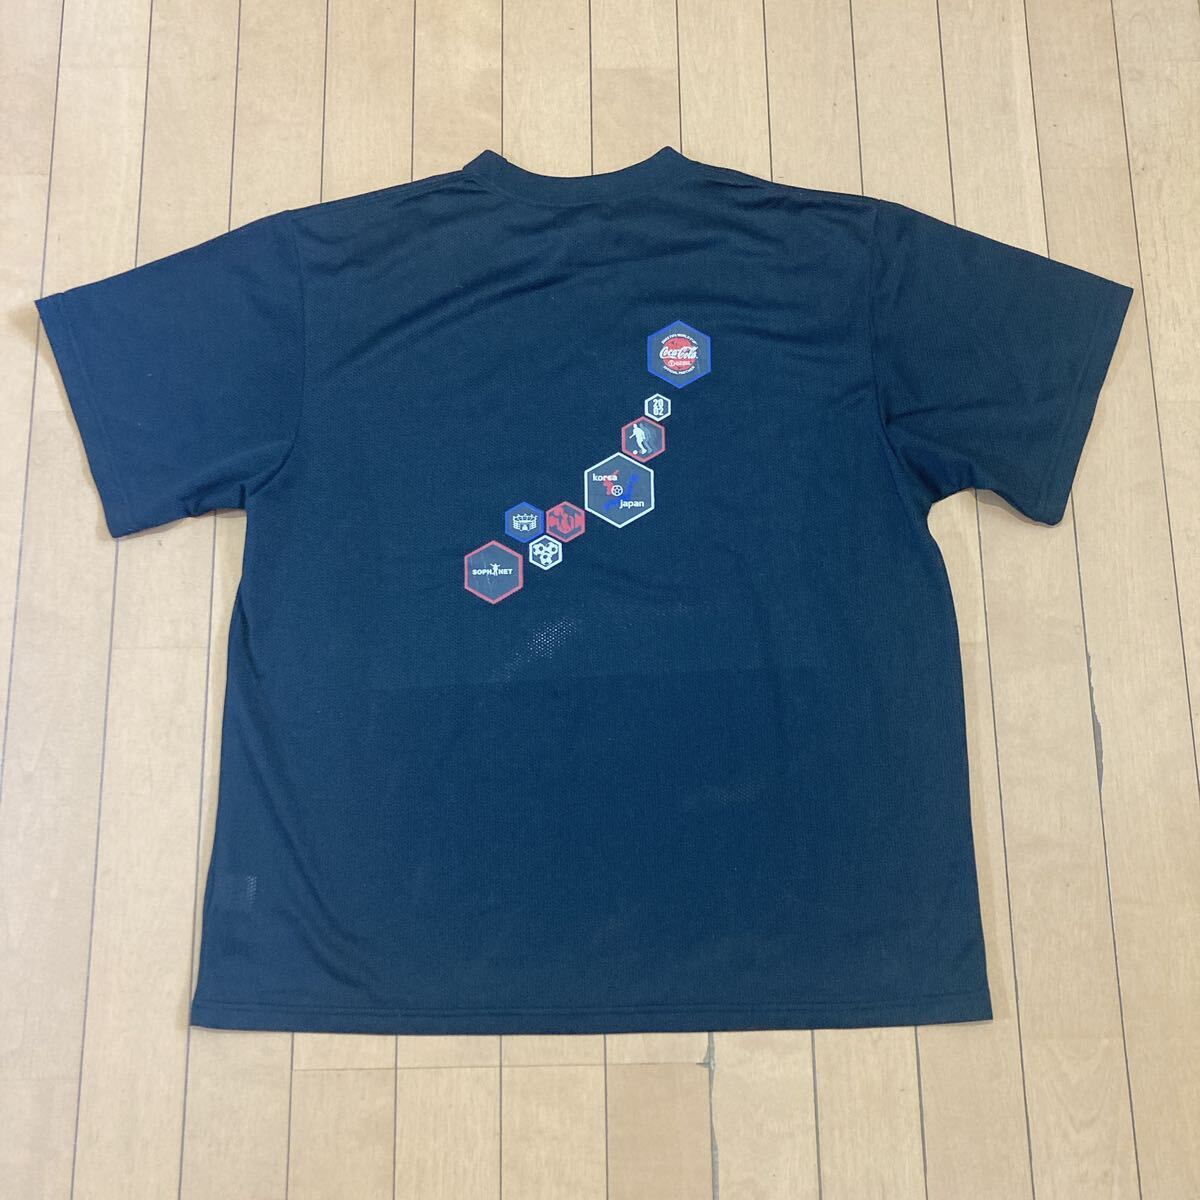 2002日韓W杯 SOPH.NETコラボ Tシャツ Mトレーニング シャツ Tシャツ 半袖 ユニフォーム _画像4